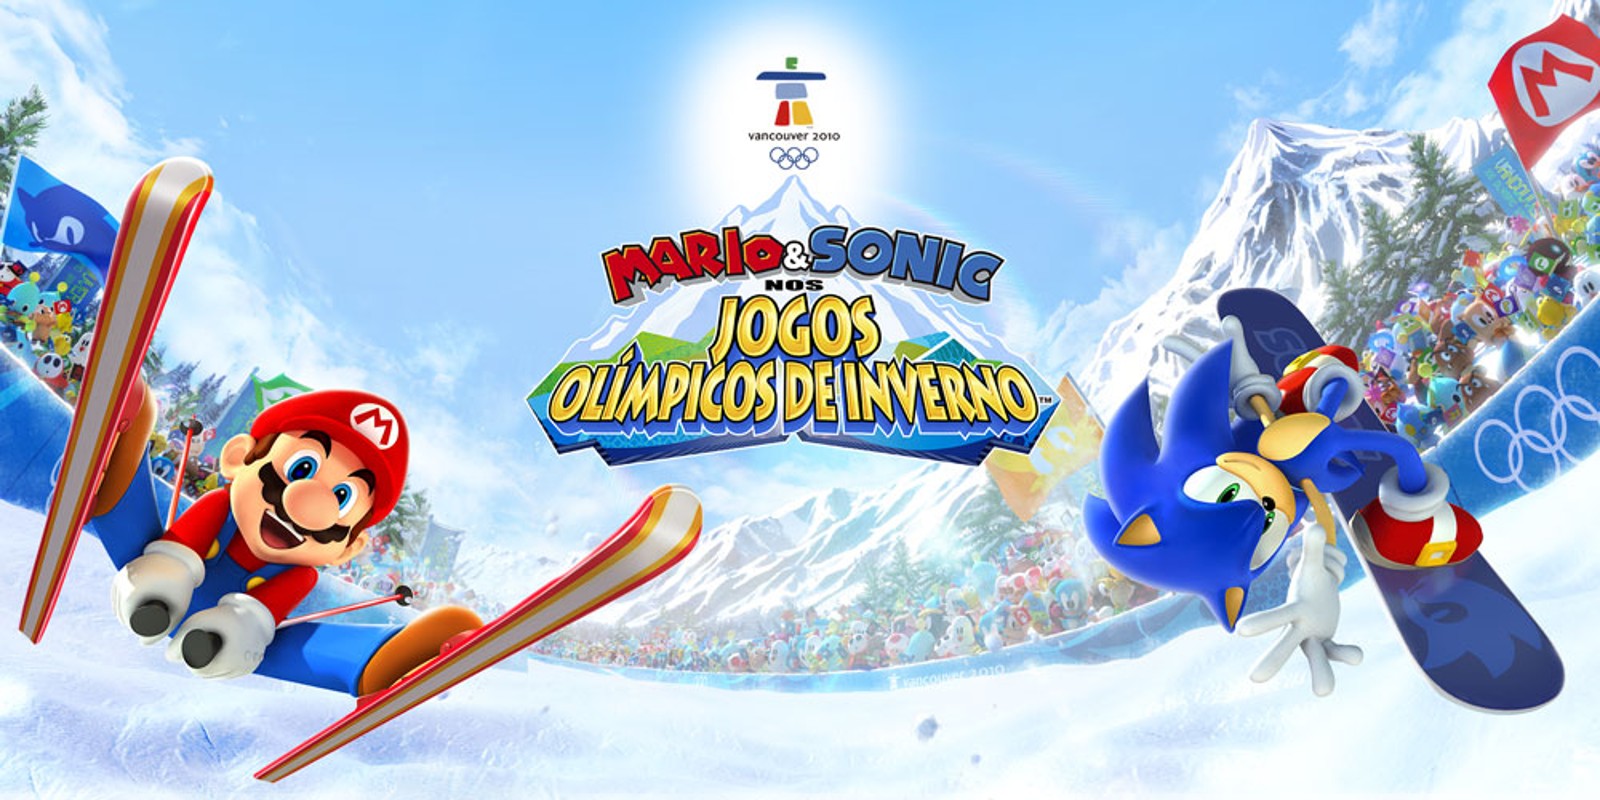 Mario e Sonic nos Jogos Olímpicos de Inverno